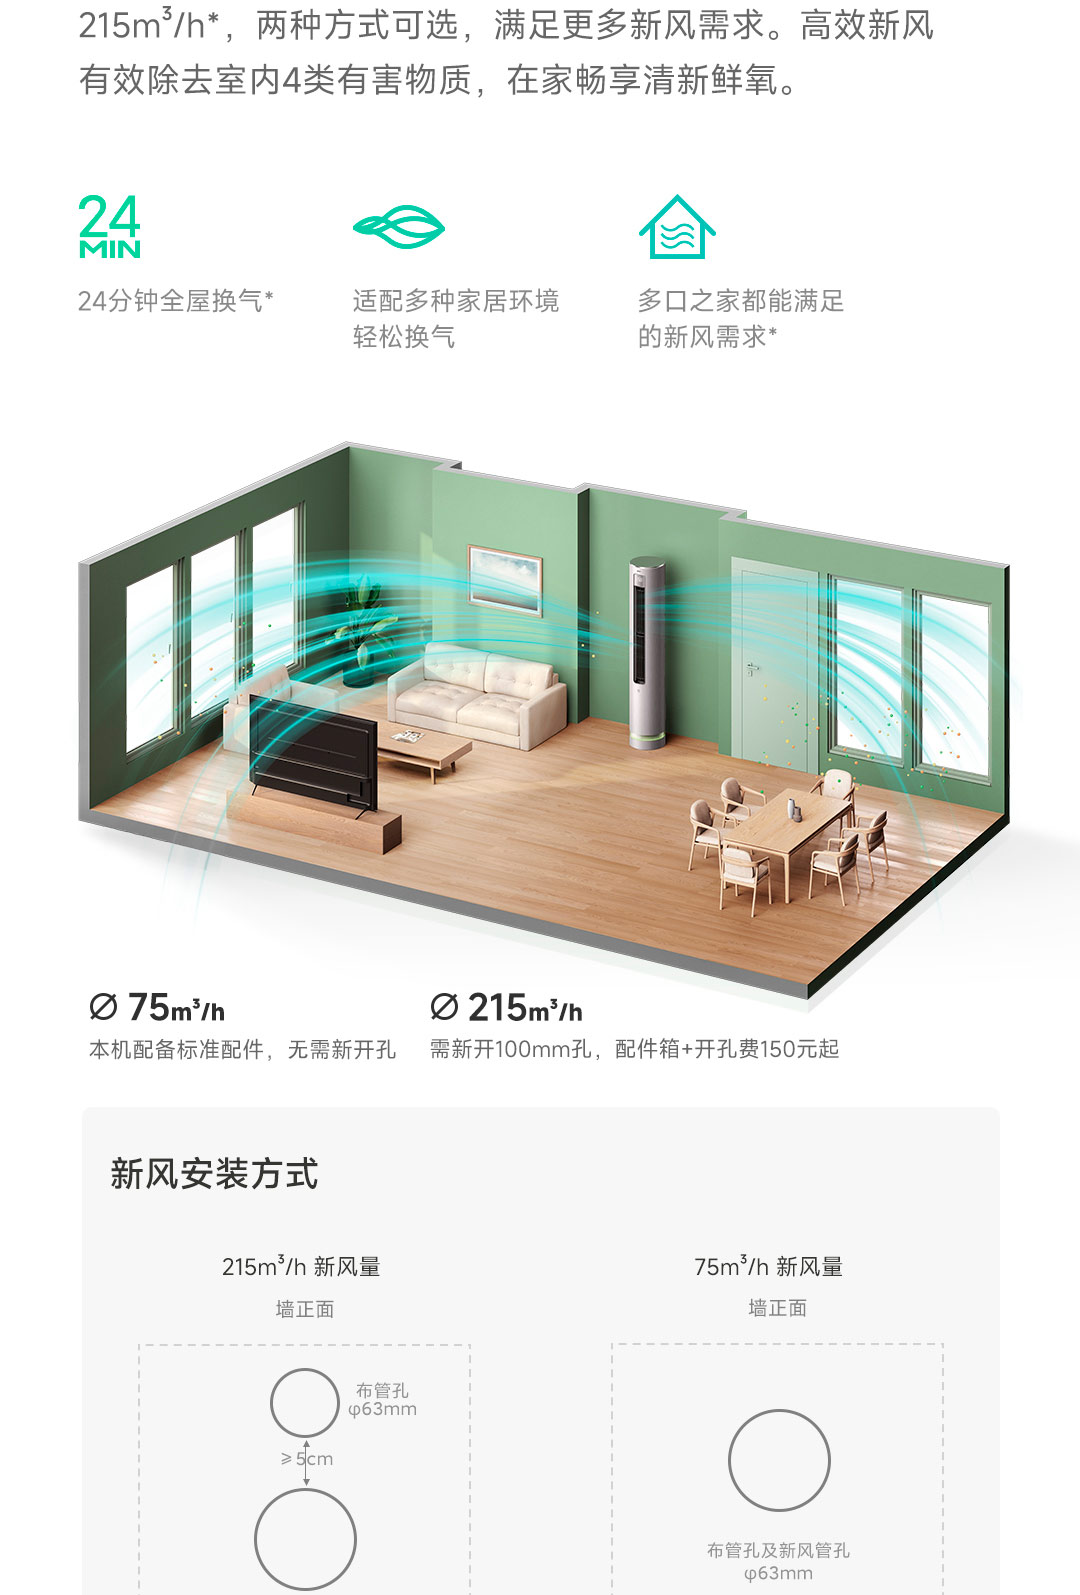 XIAOMI STORE BẮC NINH - Công ty TNHH Thương Mại và Dịch Vụ Smart Home